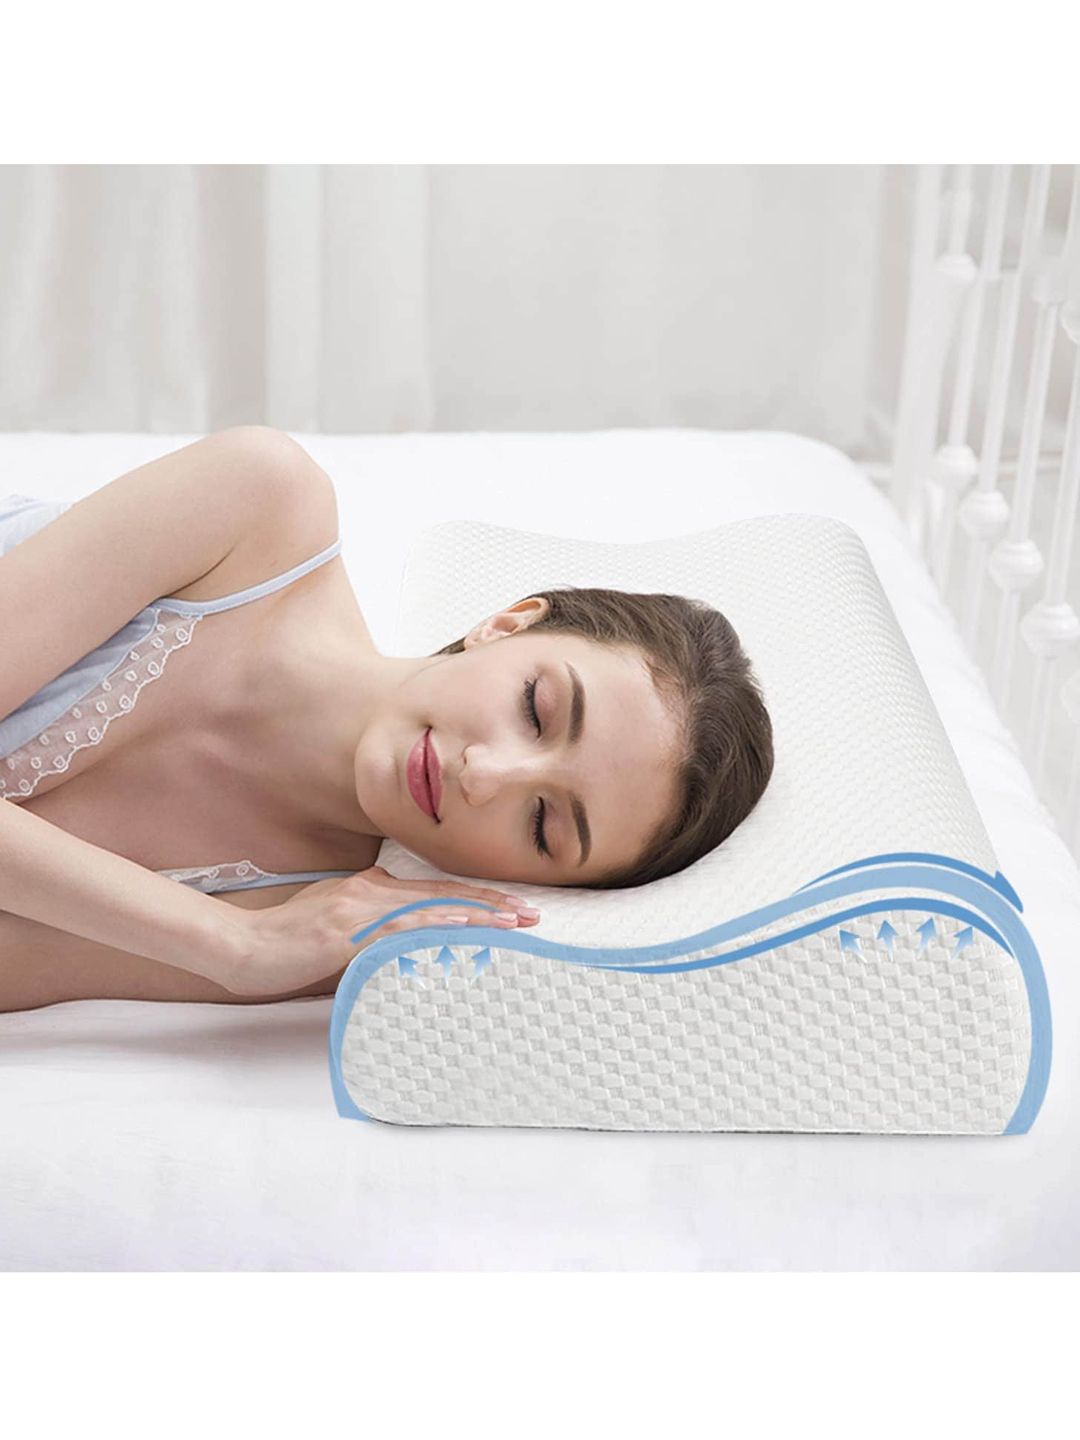 Pum Pum White Solid Orthopaedic Cervial Contour Memory Foam Pillow Price in India